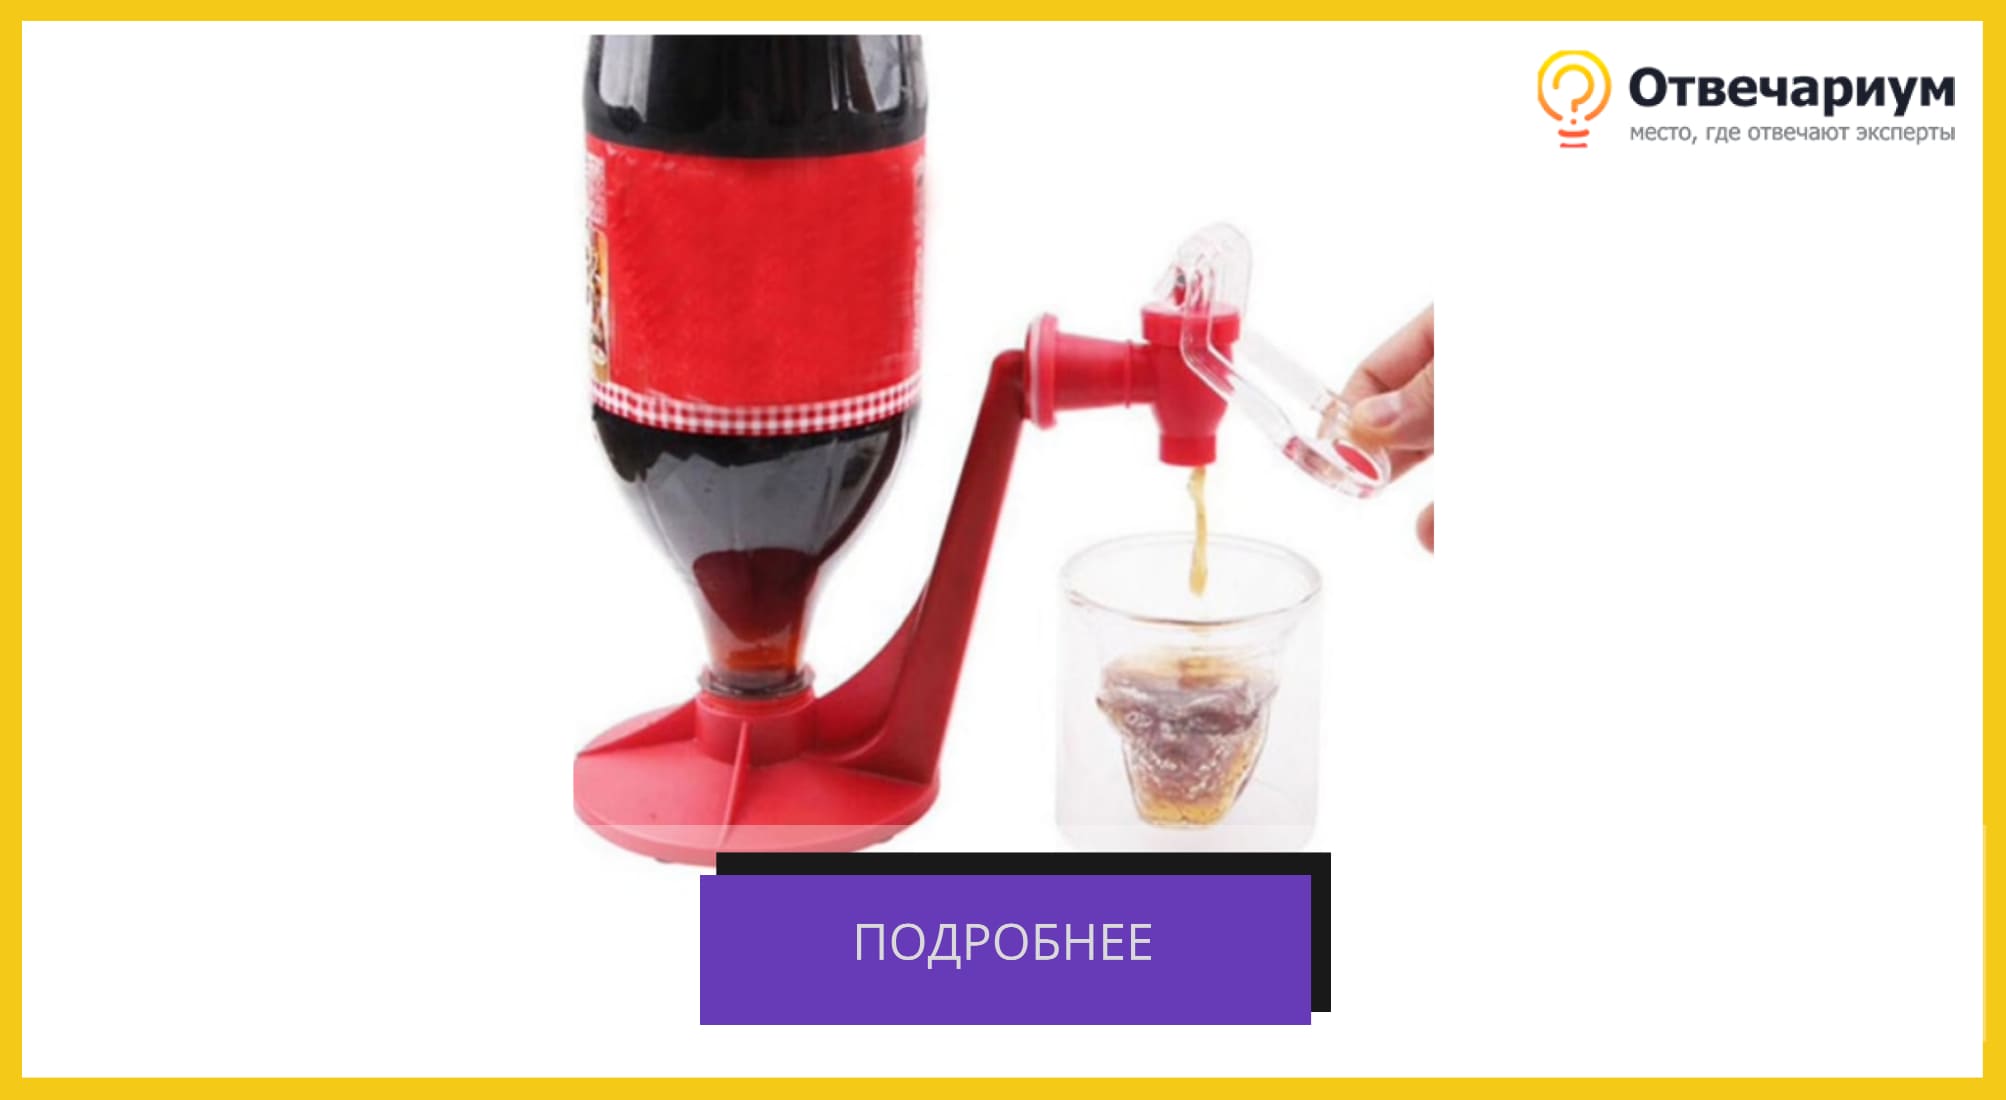 Диспенсер красного цвета с краником. Удобно для перевернутой бутылки кока-колы и разлива газировки в стакан.